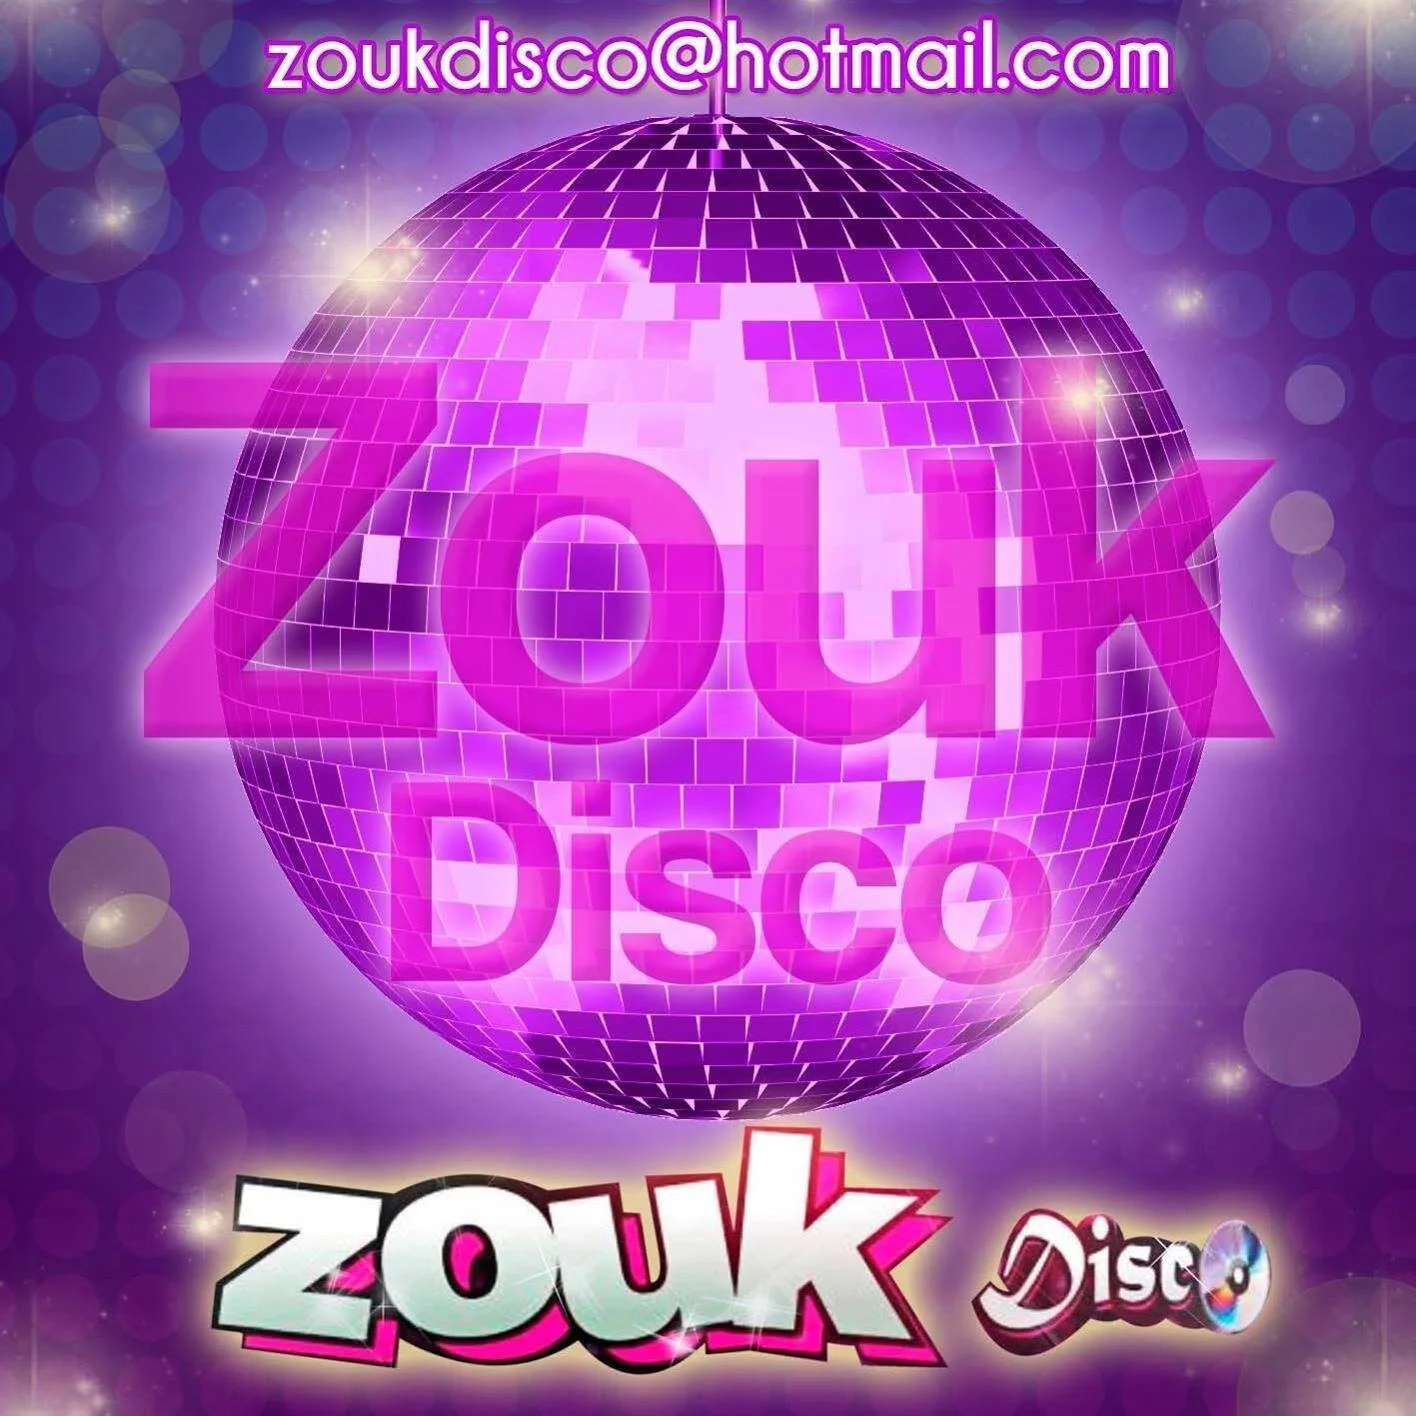 Discotecas-zouk-disco-31306